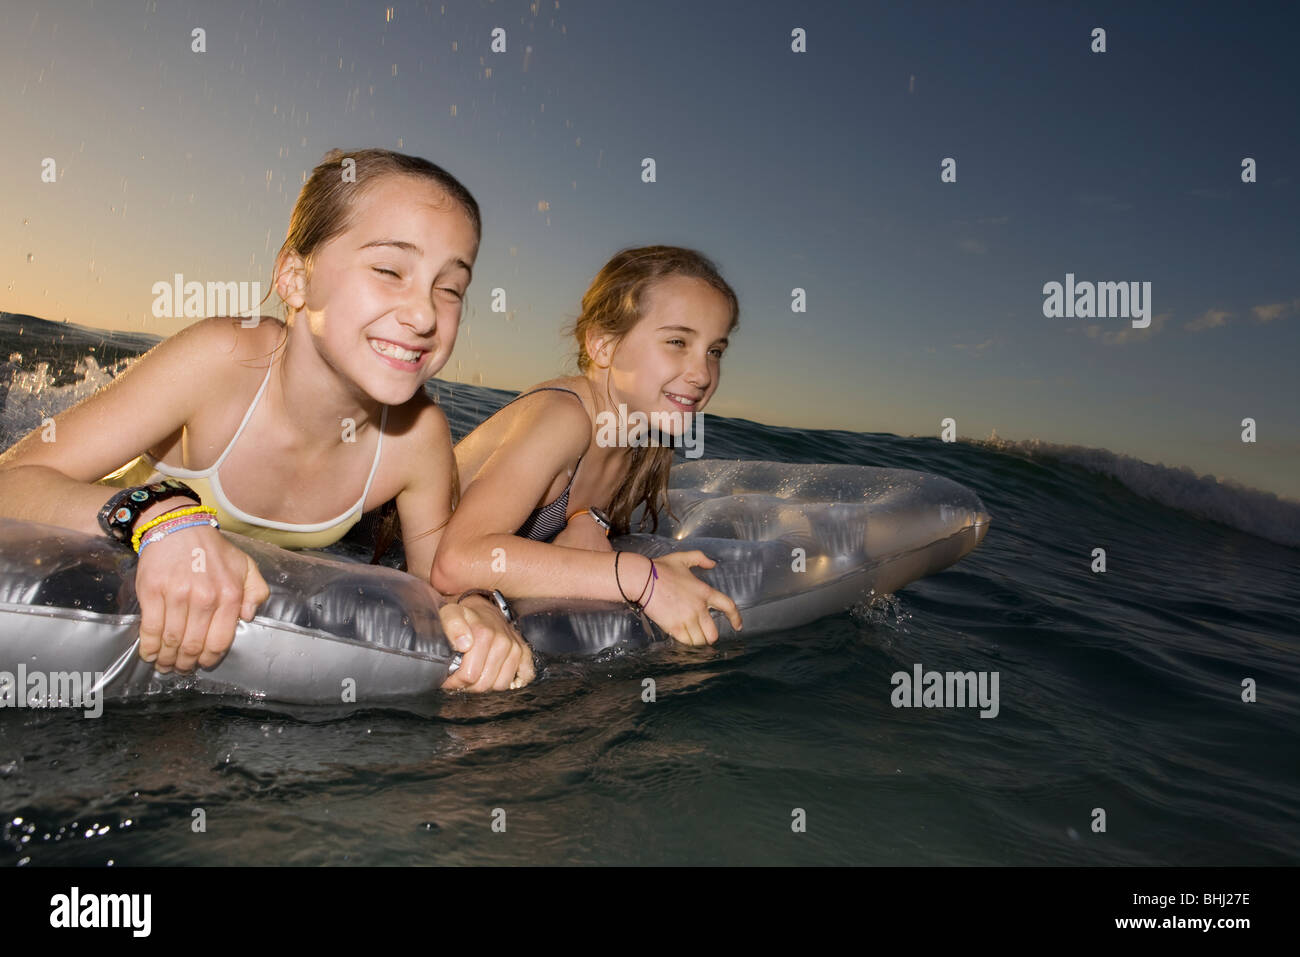 Zwei Schwestern Welle surfen auf Luftmatratze Stockfoto